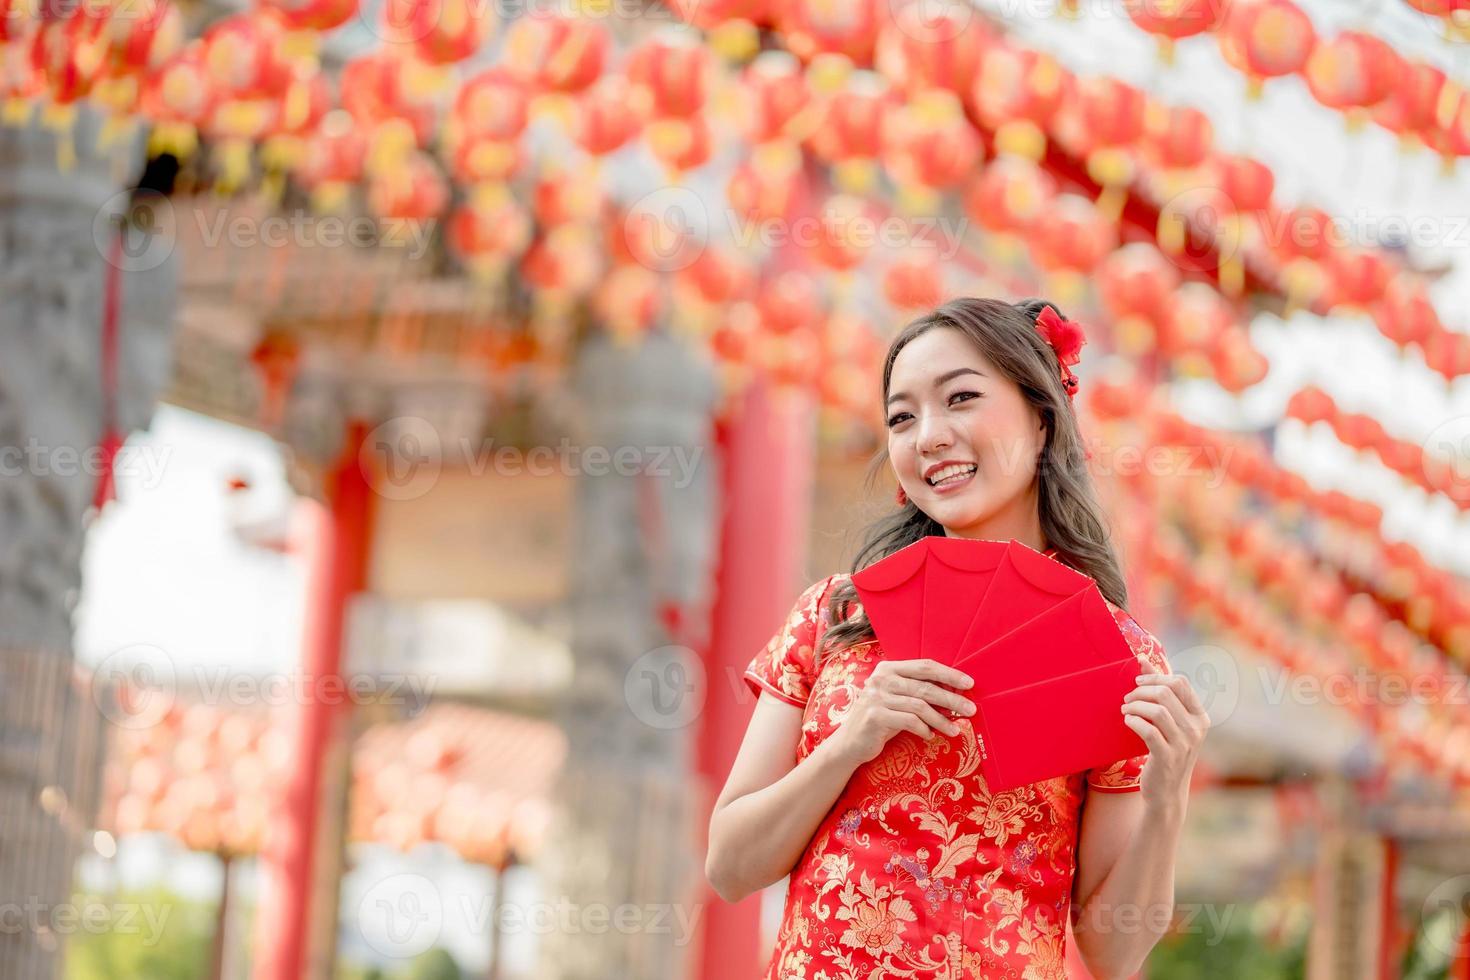 hermosa mujer asiática sonriendo felizmente sosteniendo ang pao, sobres rojos usando cheongsam luciendo confiada en el templo budista chino. celebrar el año nuevo lunar chino, vacaciones de temporada festiva foto